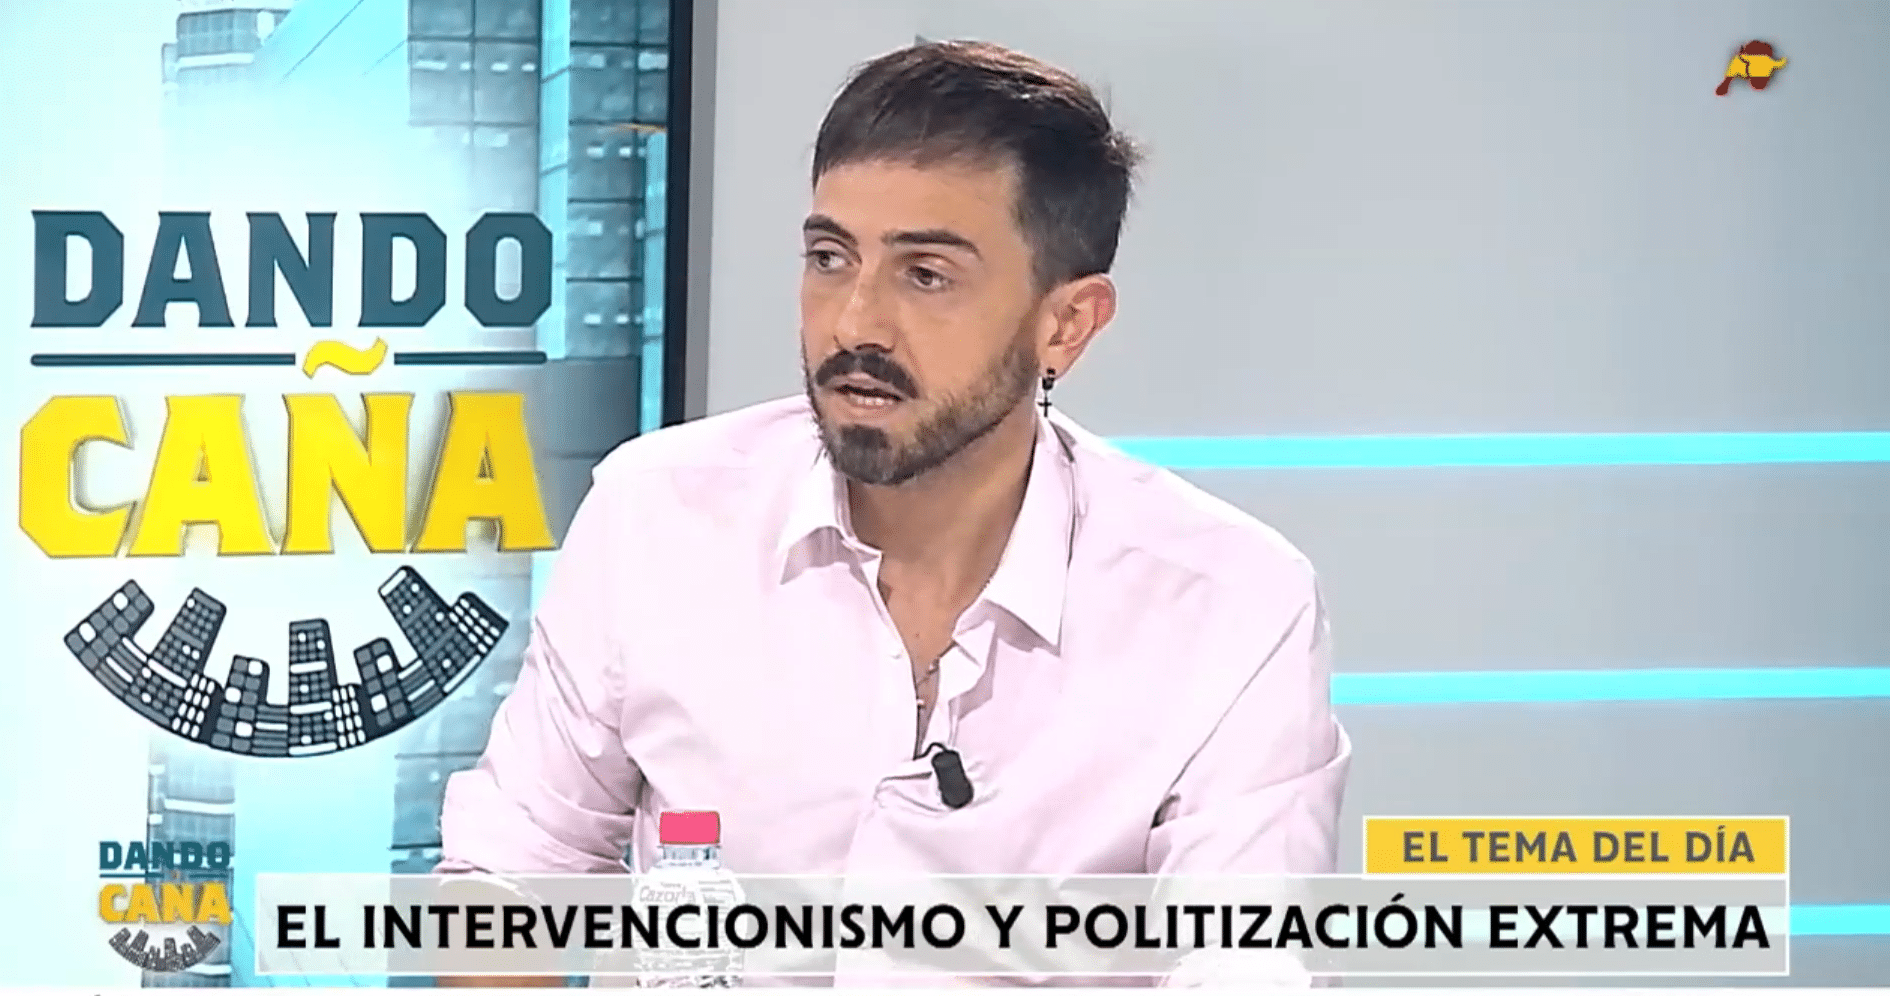  Isaac Parejo avisa de que tras las detenciones de periodistas, podría desaparecer gente